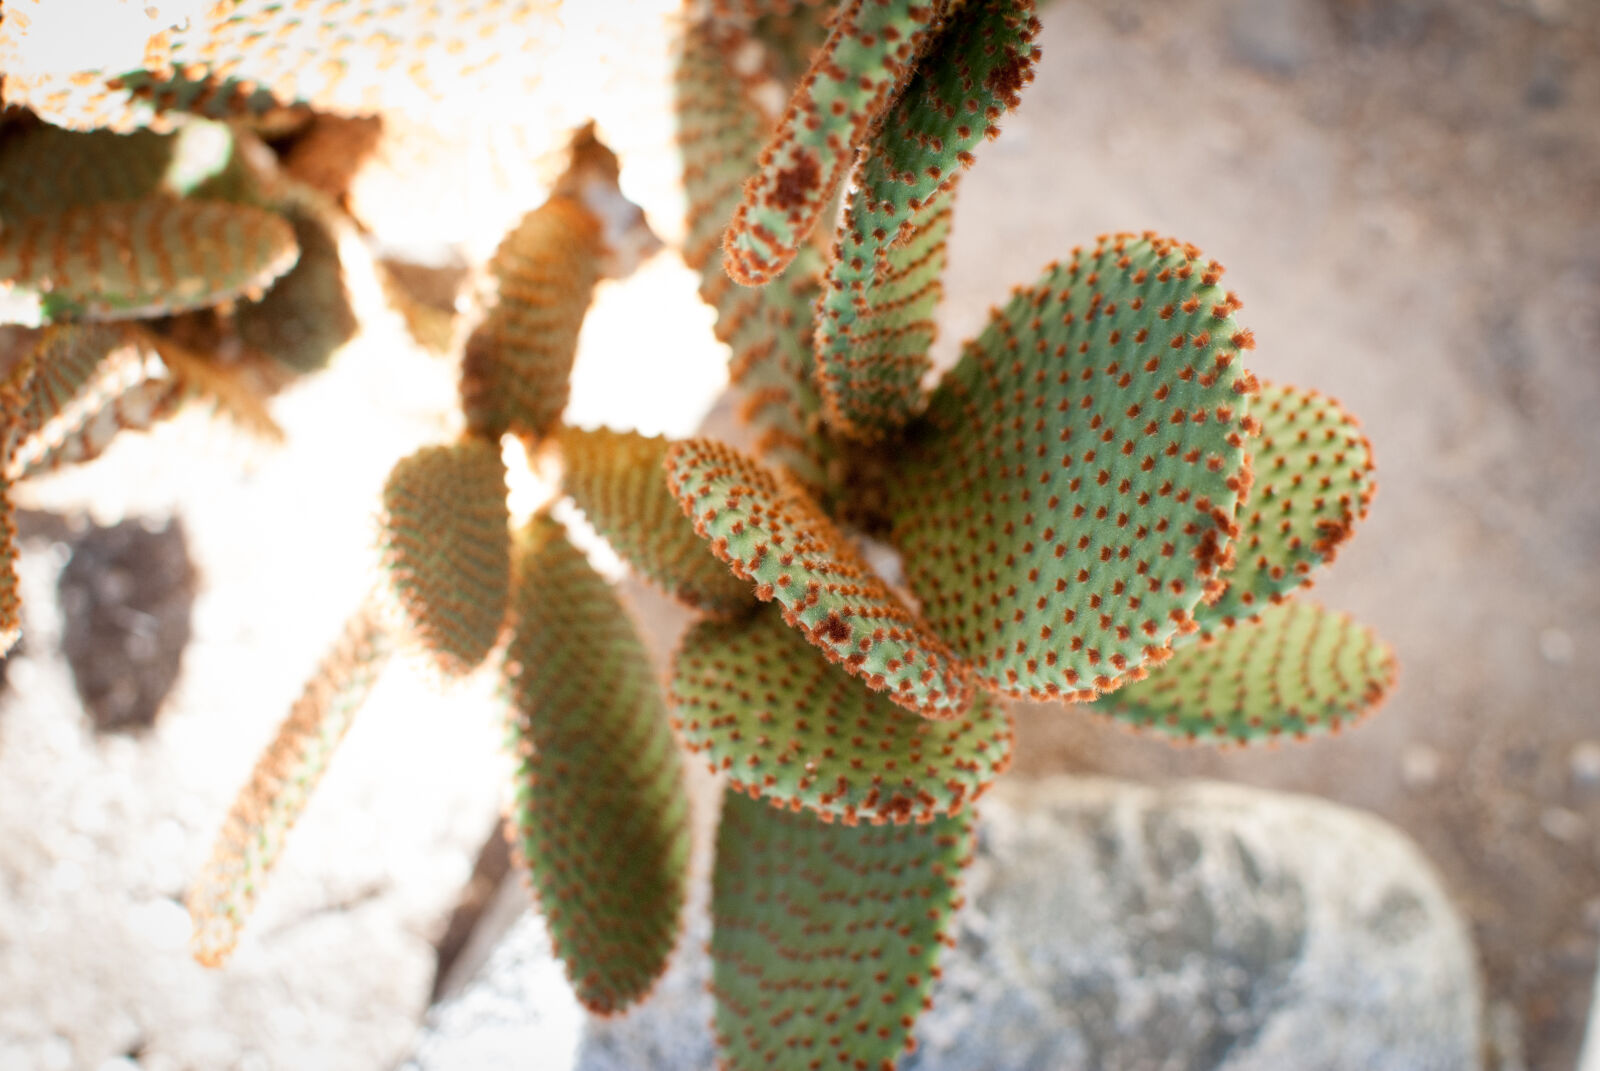 Nikon AF-S DX Nikkor 35mm F1.8G sample photo. Cactus, colors, nature photography